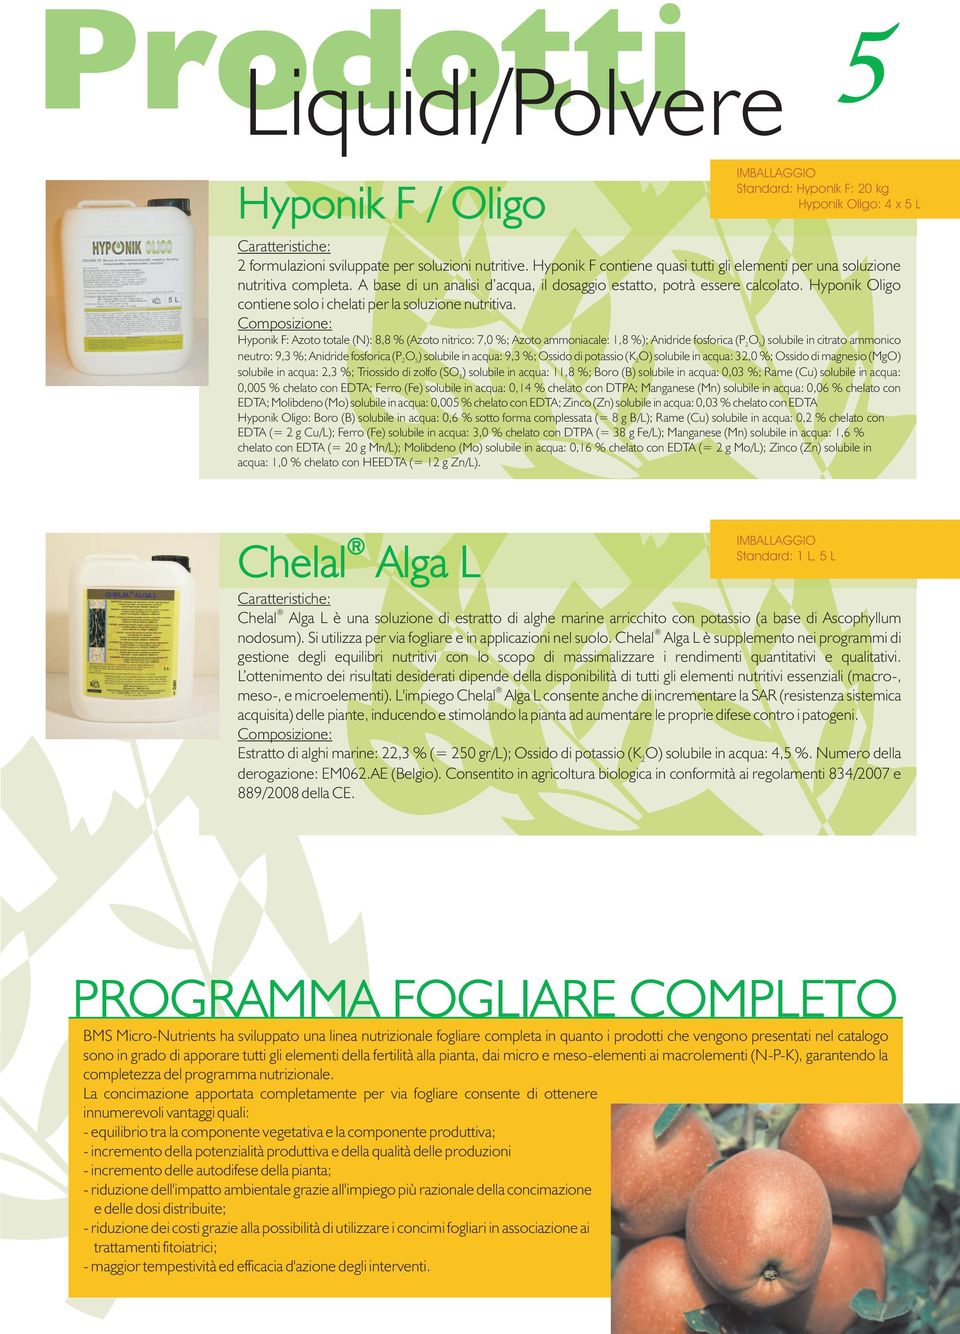 Hyponik Oligo contiene solo i chelati per la soluzione nutritiva.